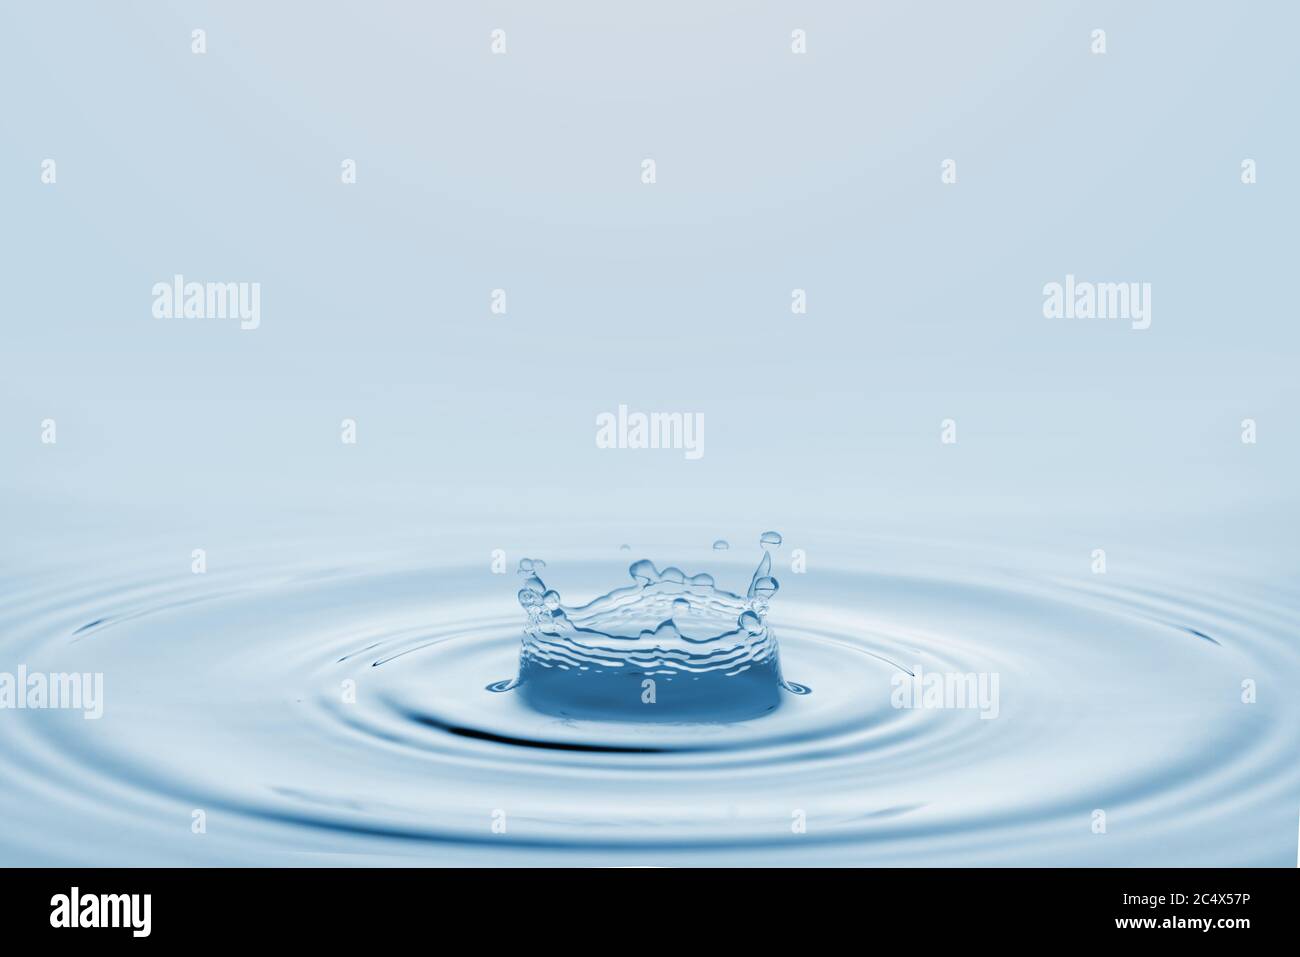 Water splash isolated on blue background. Stock Photo